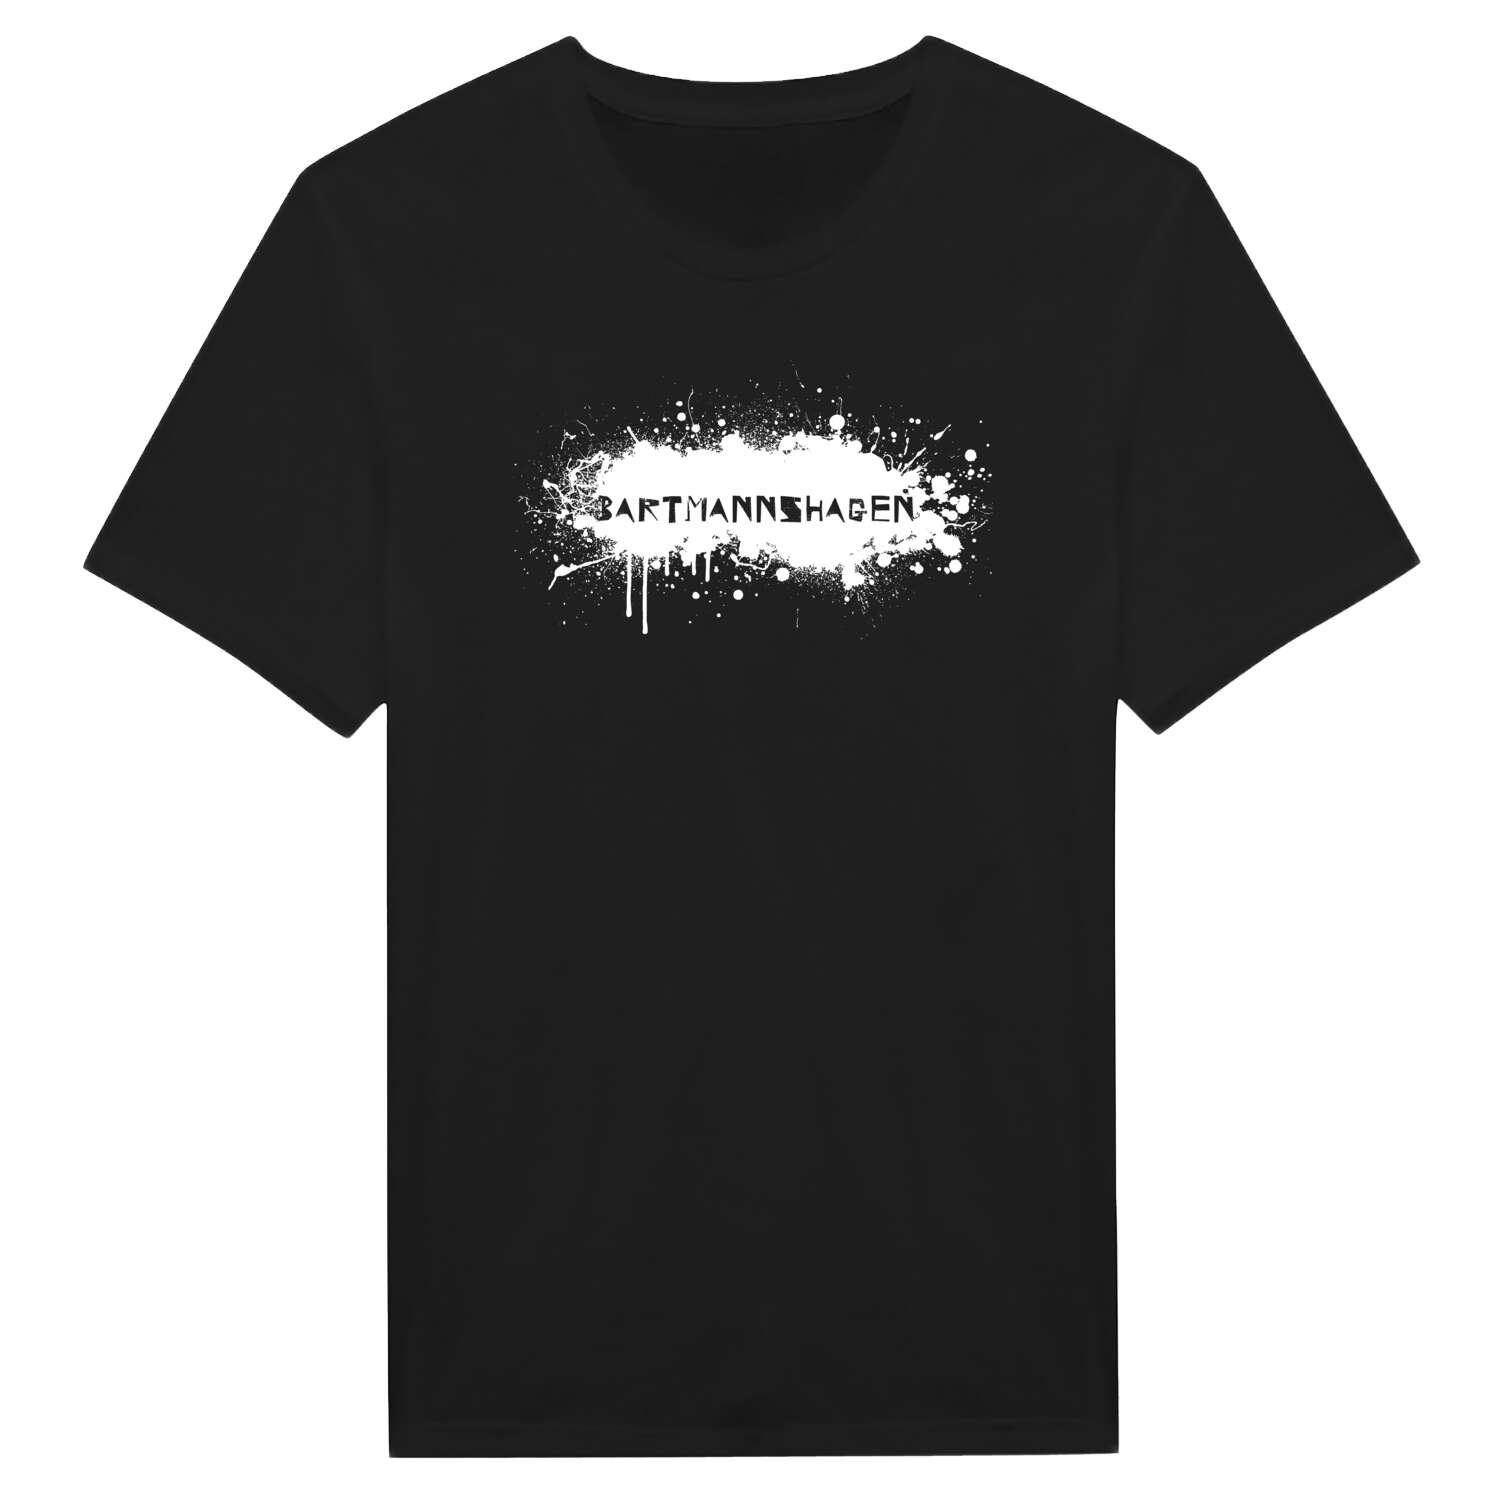 Bartmannshagen T-Shirt »Paint Splash Punk«